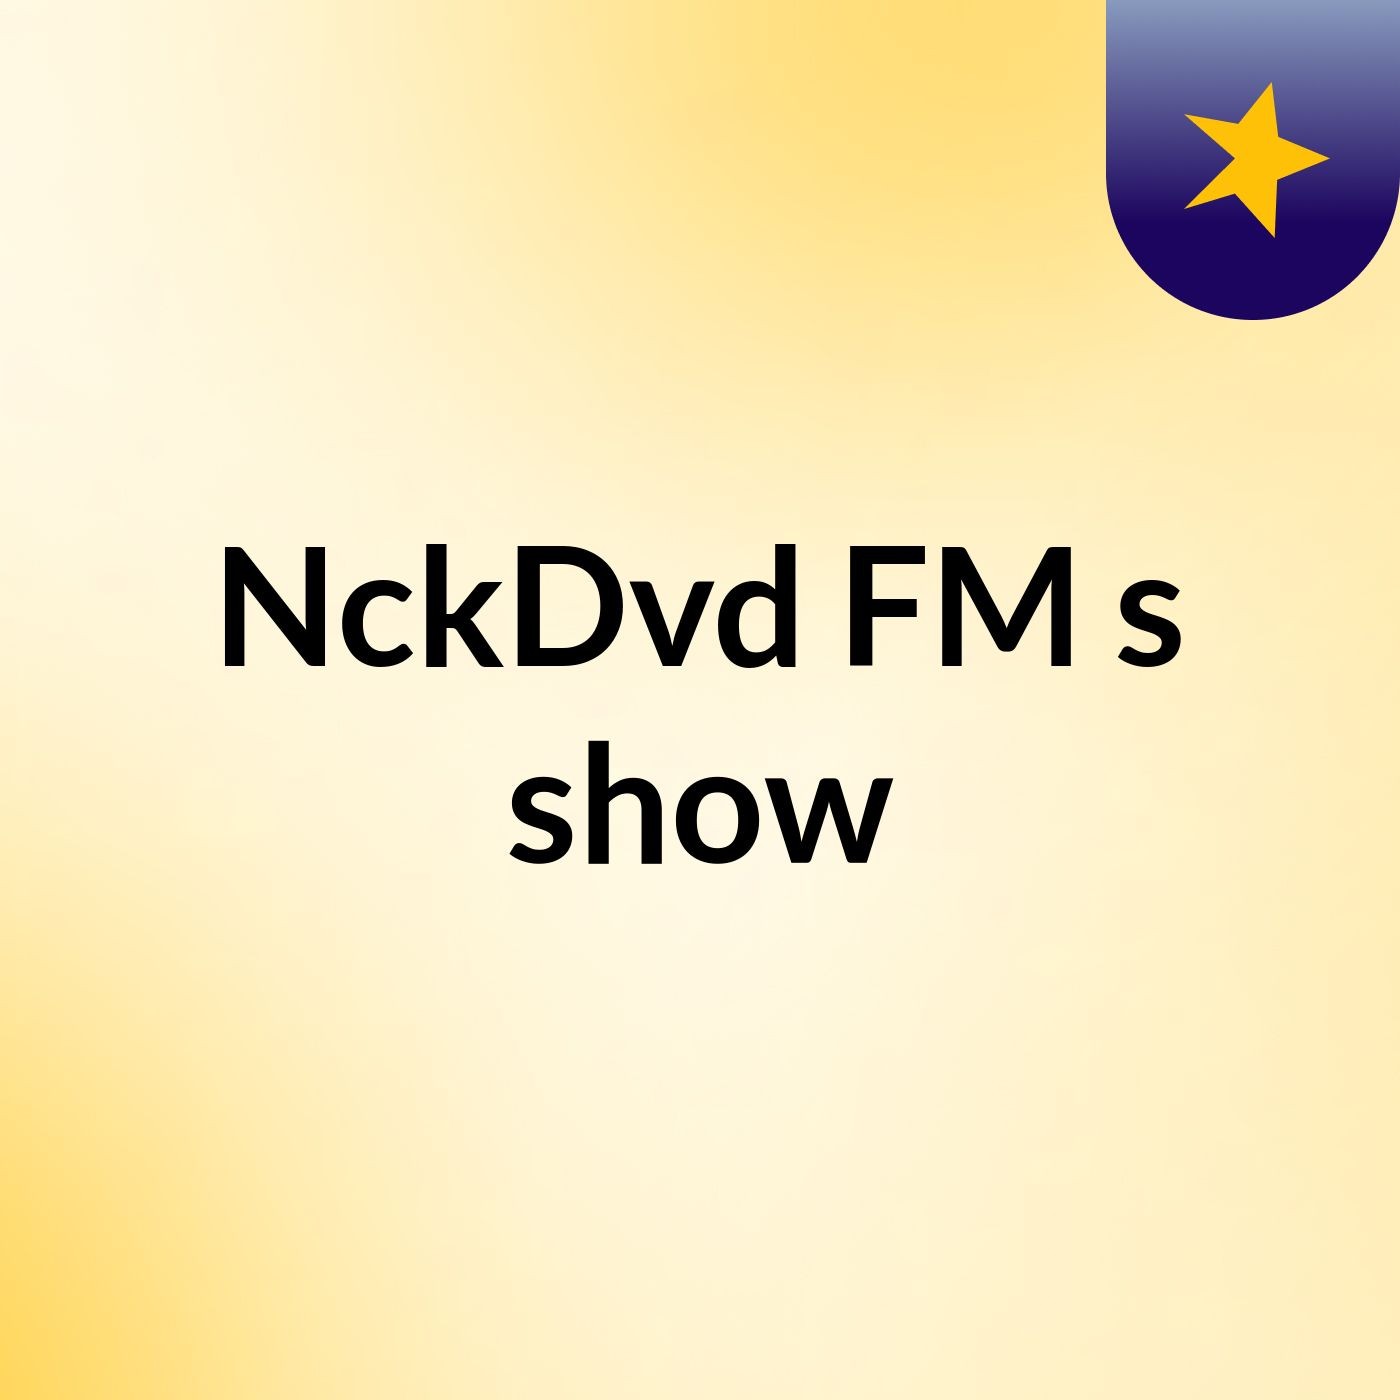 NckDvd FM's show